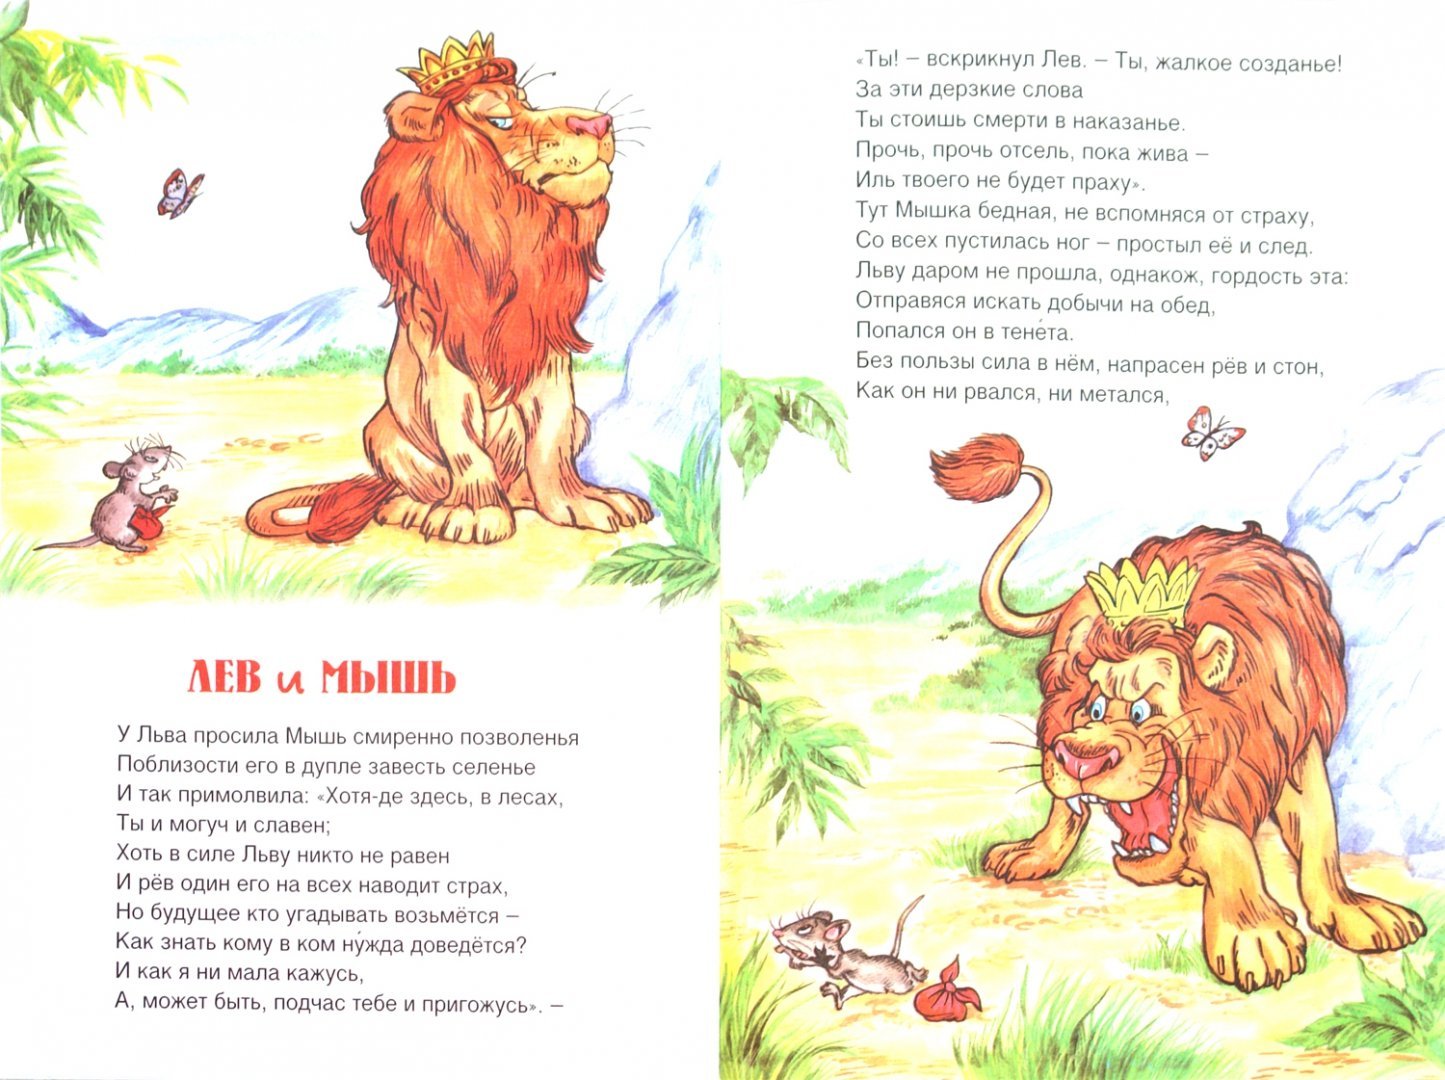 Читать 3 льва. Басня Лев и мышь Крылов. Басня Крылова Лев и мышь читать. Иллюстрация к басне Лев и мышь. Басня Крылова про Льва.